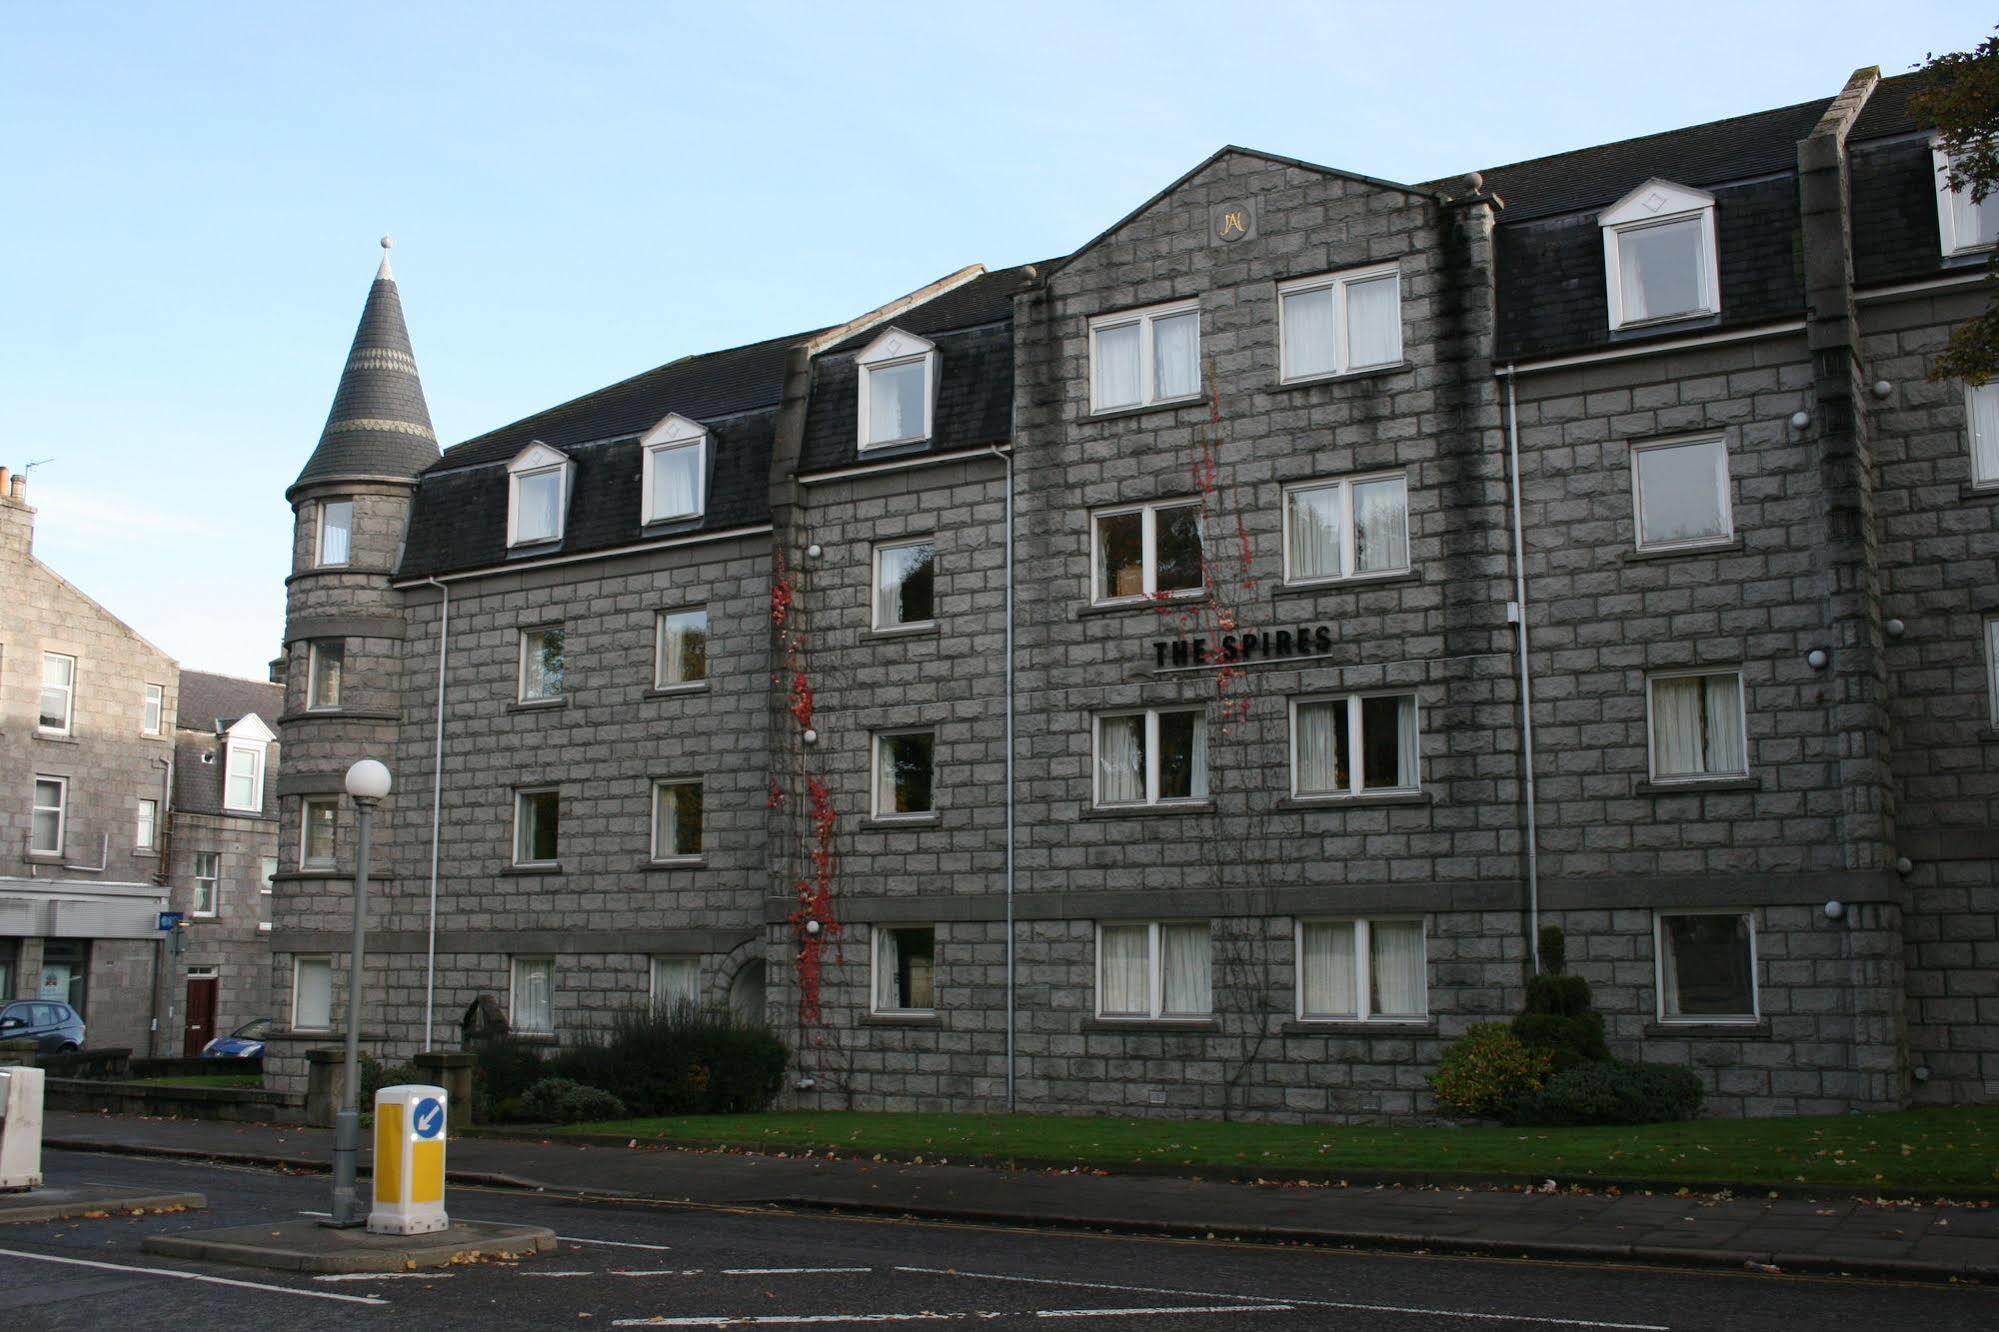 The Spires Serviced Apartments Aberdeen Zewnętrze zdjęcie